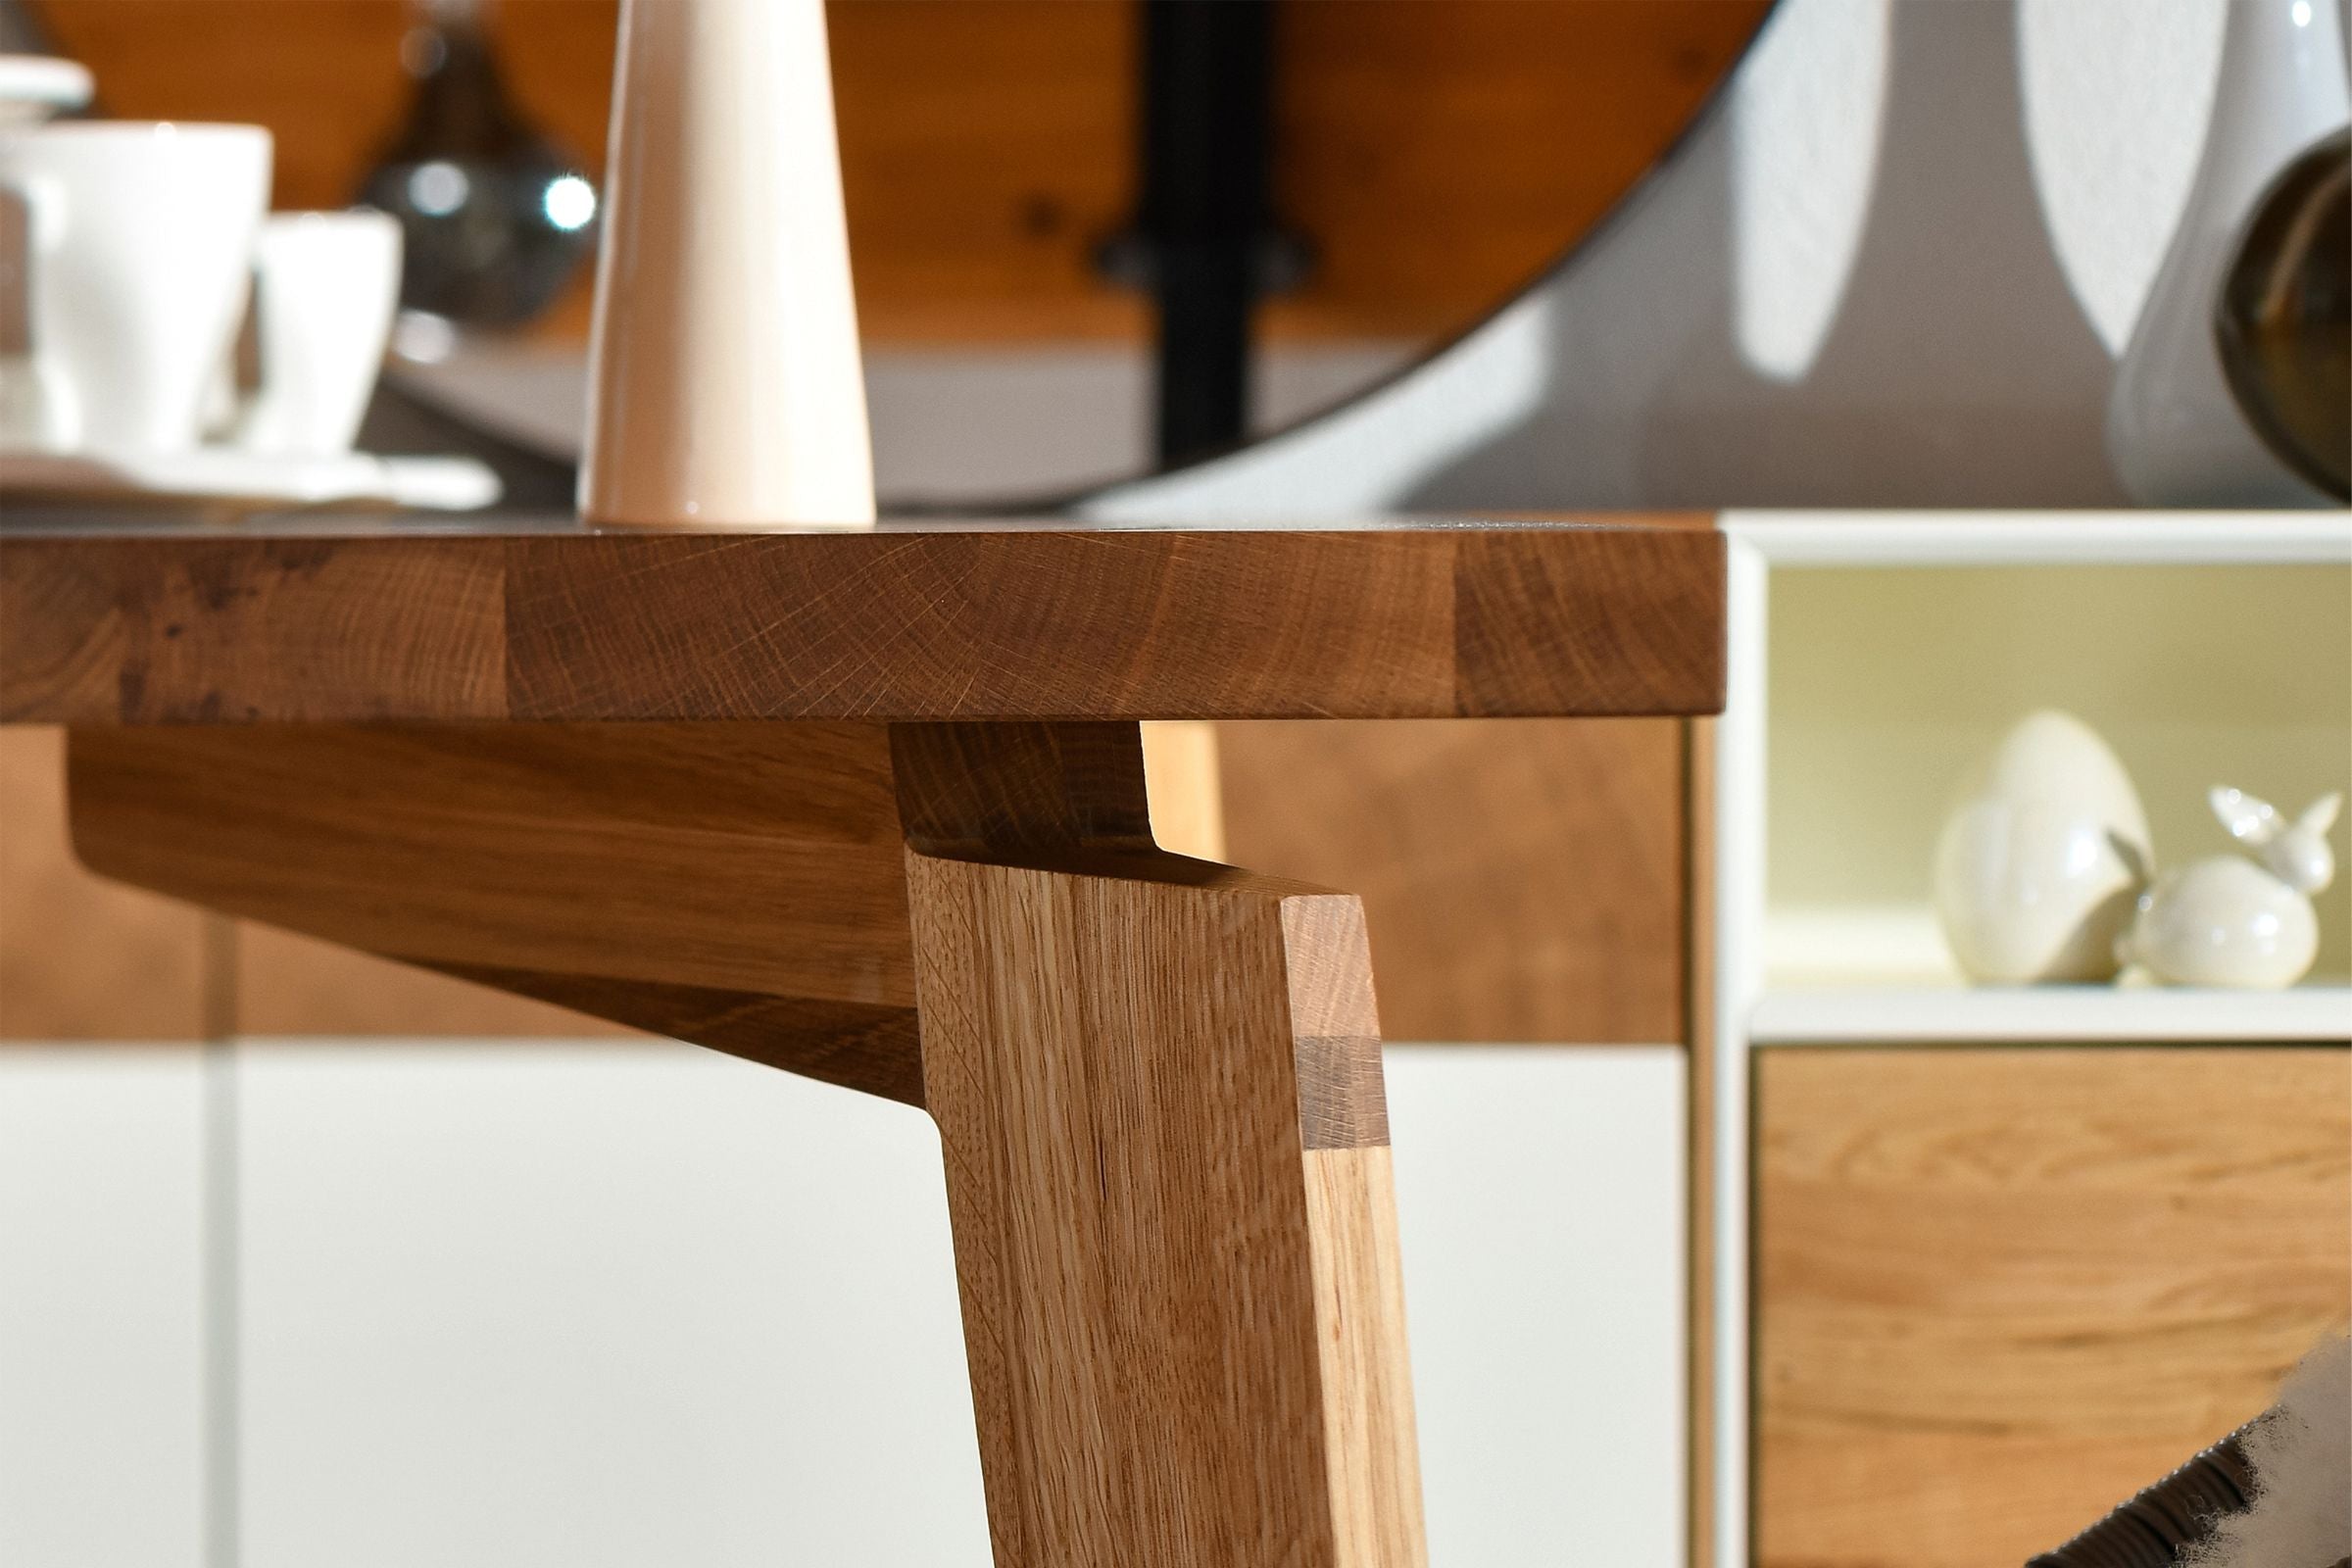 Detailansicht der Verbindung zwischen Tischplatte und Bein des LOTTE Esstischs von WHITEOAK, die handwerkliche Qualität hervorhebt